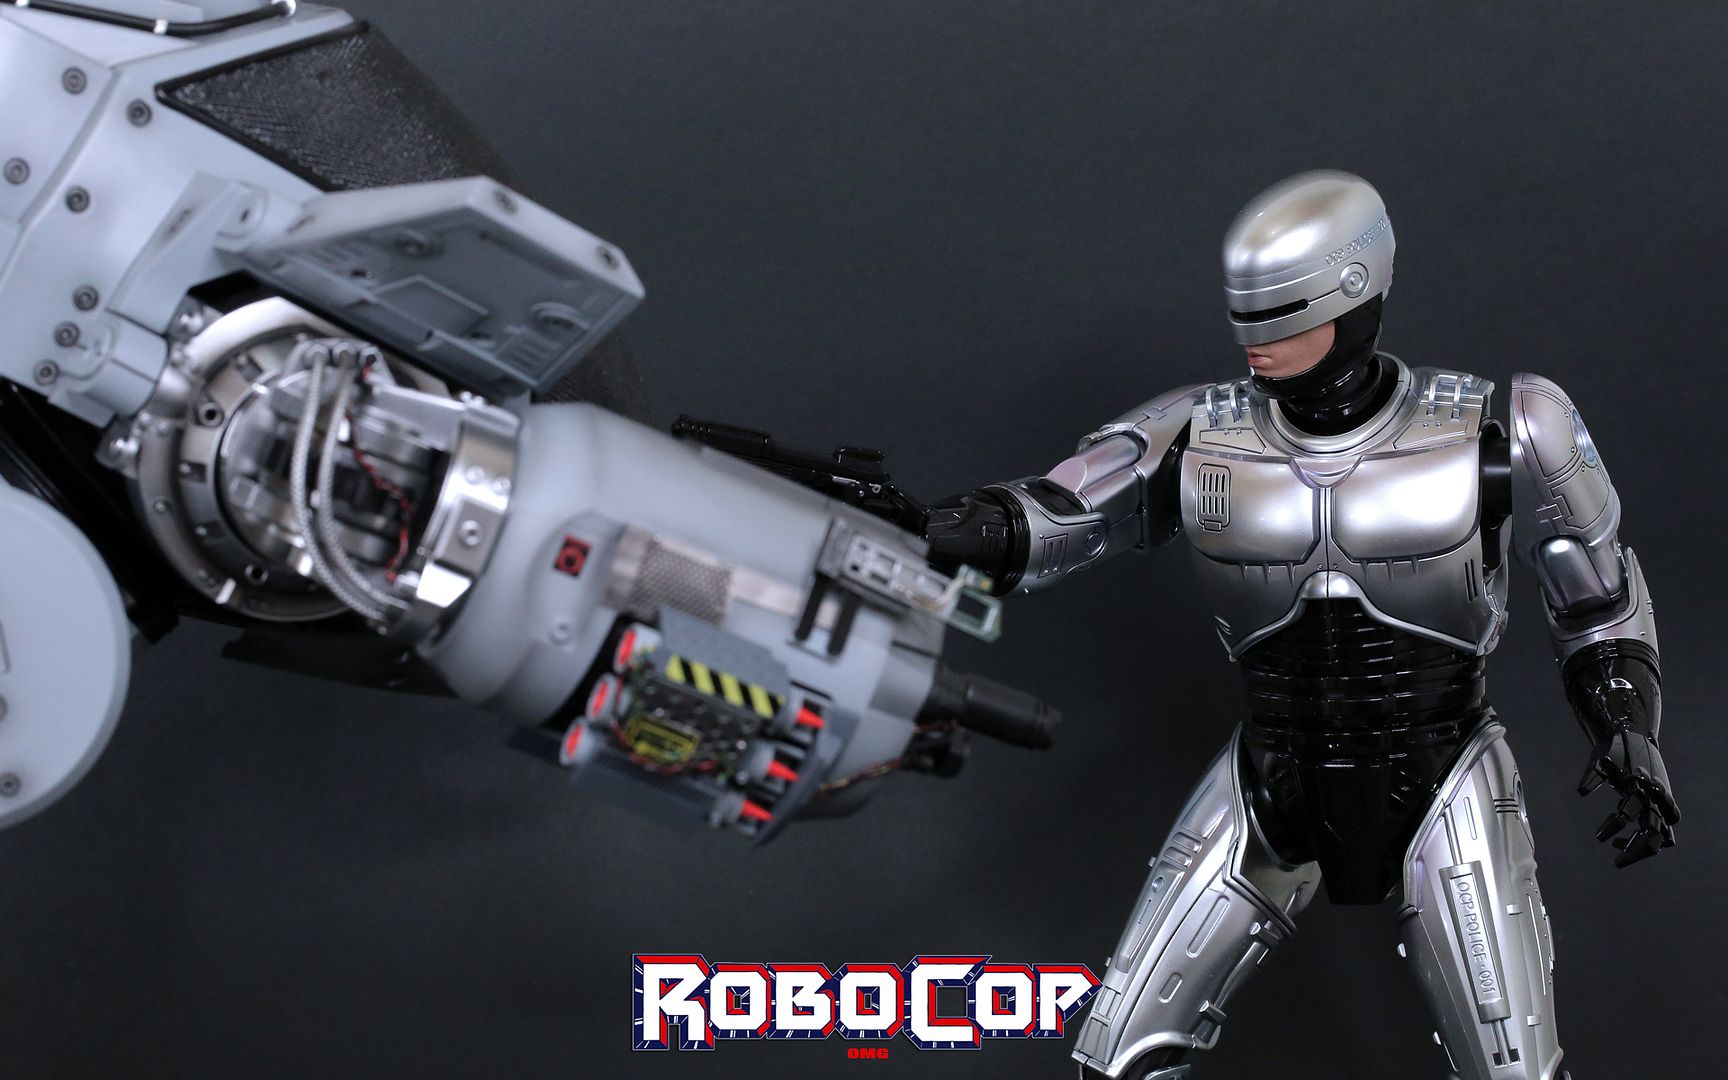 RobocopHD303_zps210fdc1e.jpg